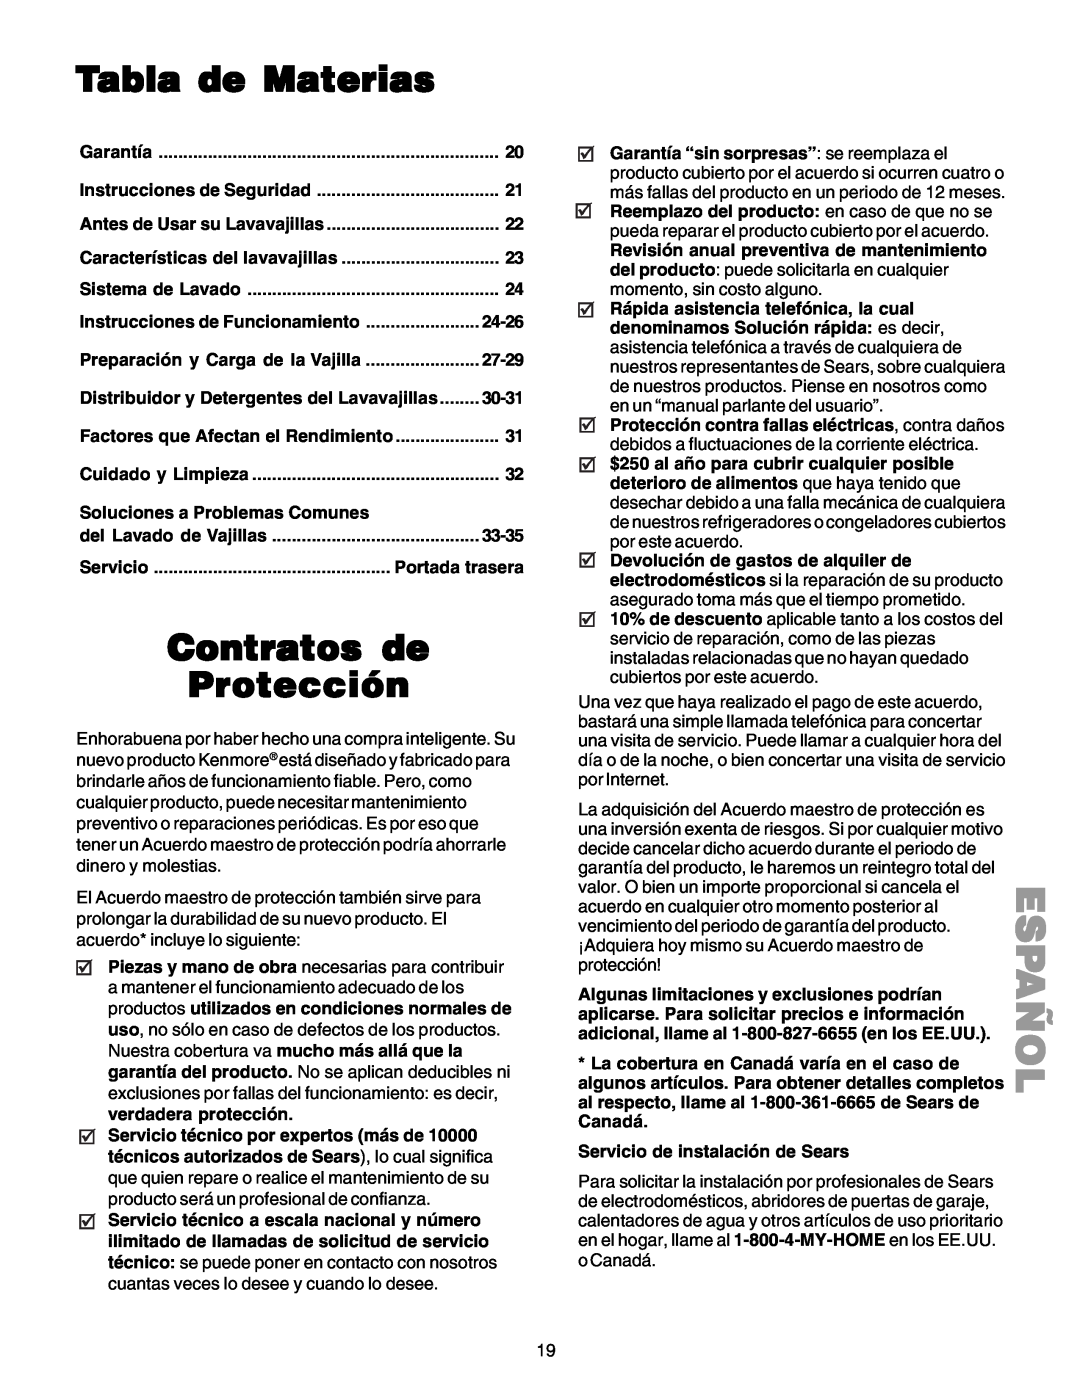 Kenmore 587.1523 manual Español, Tabla de Materias, Contratos de, Protección 